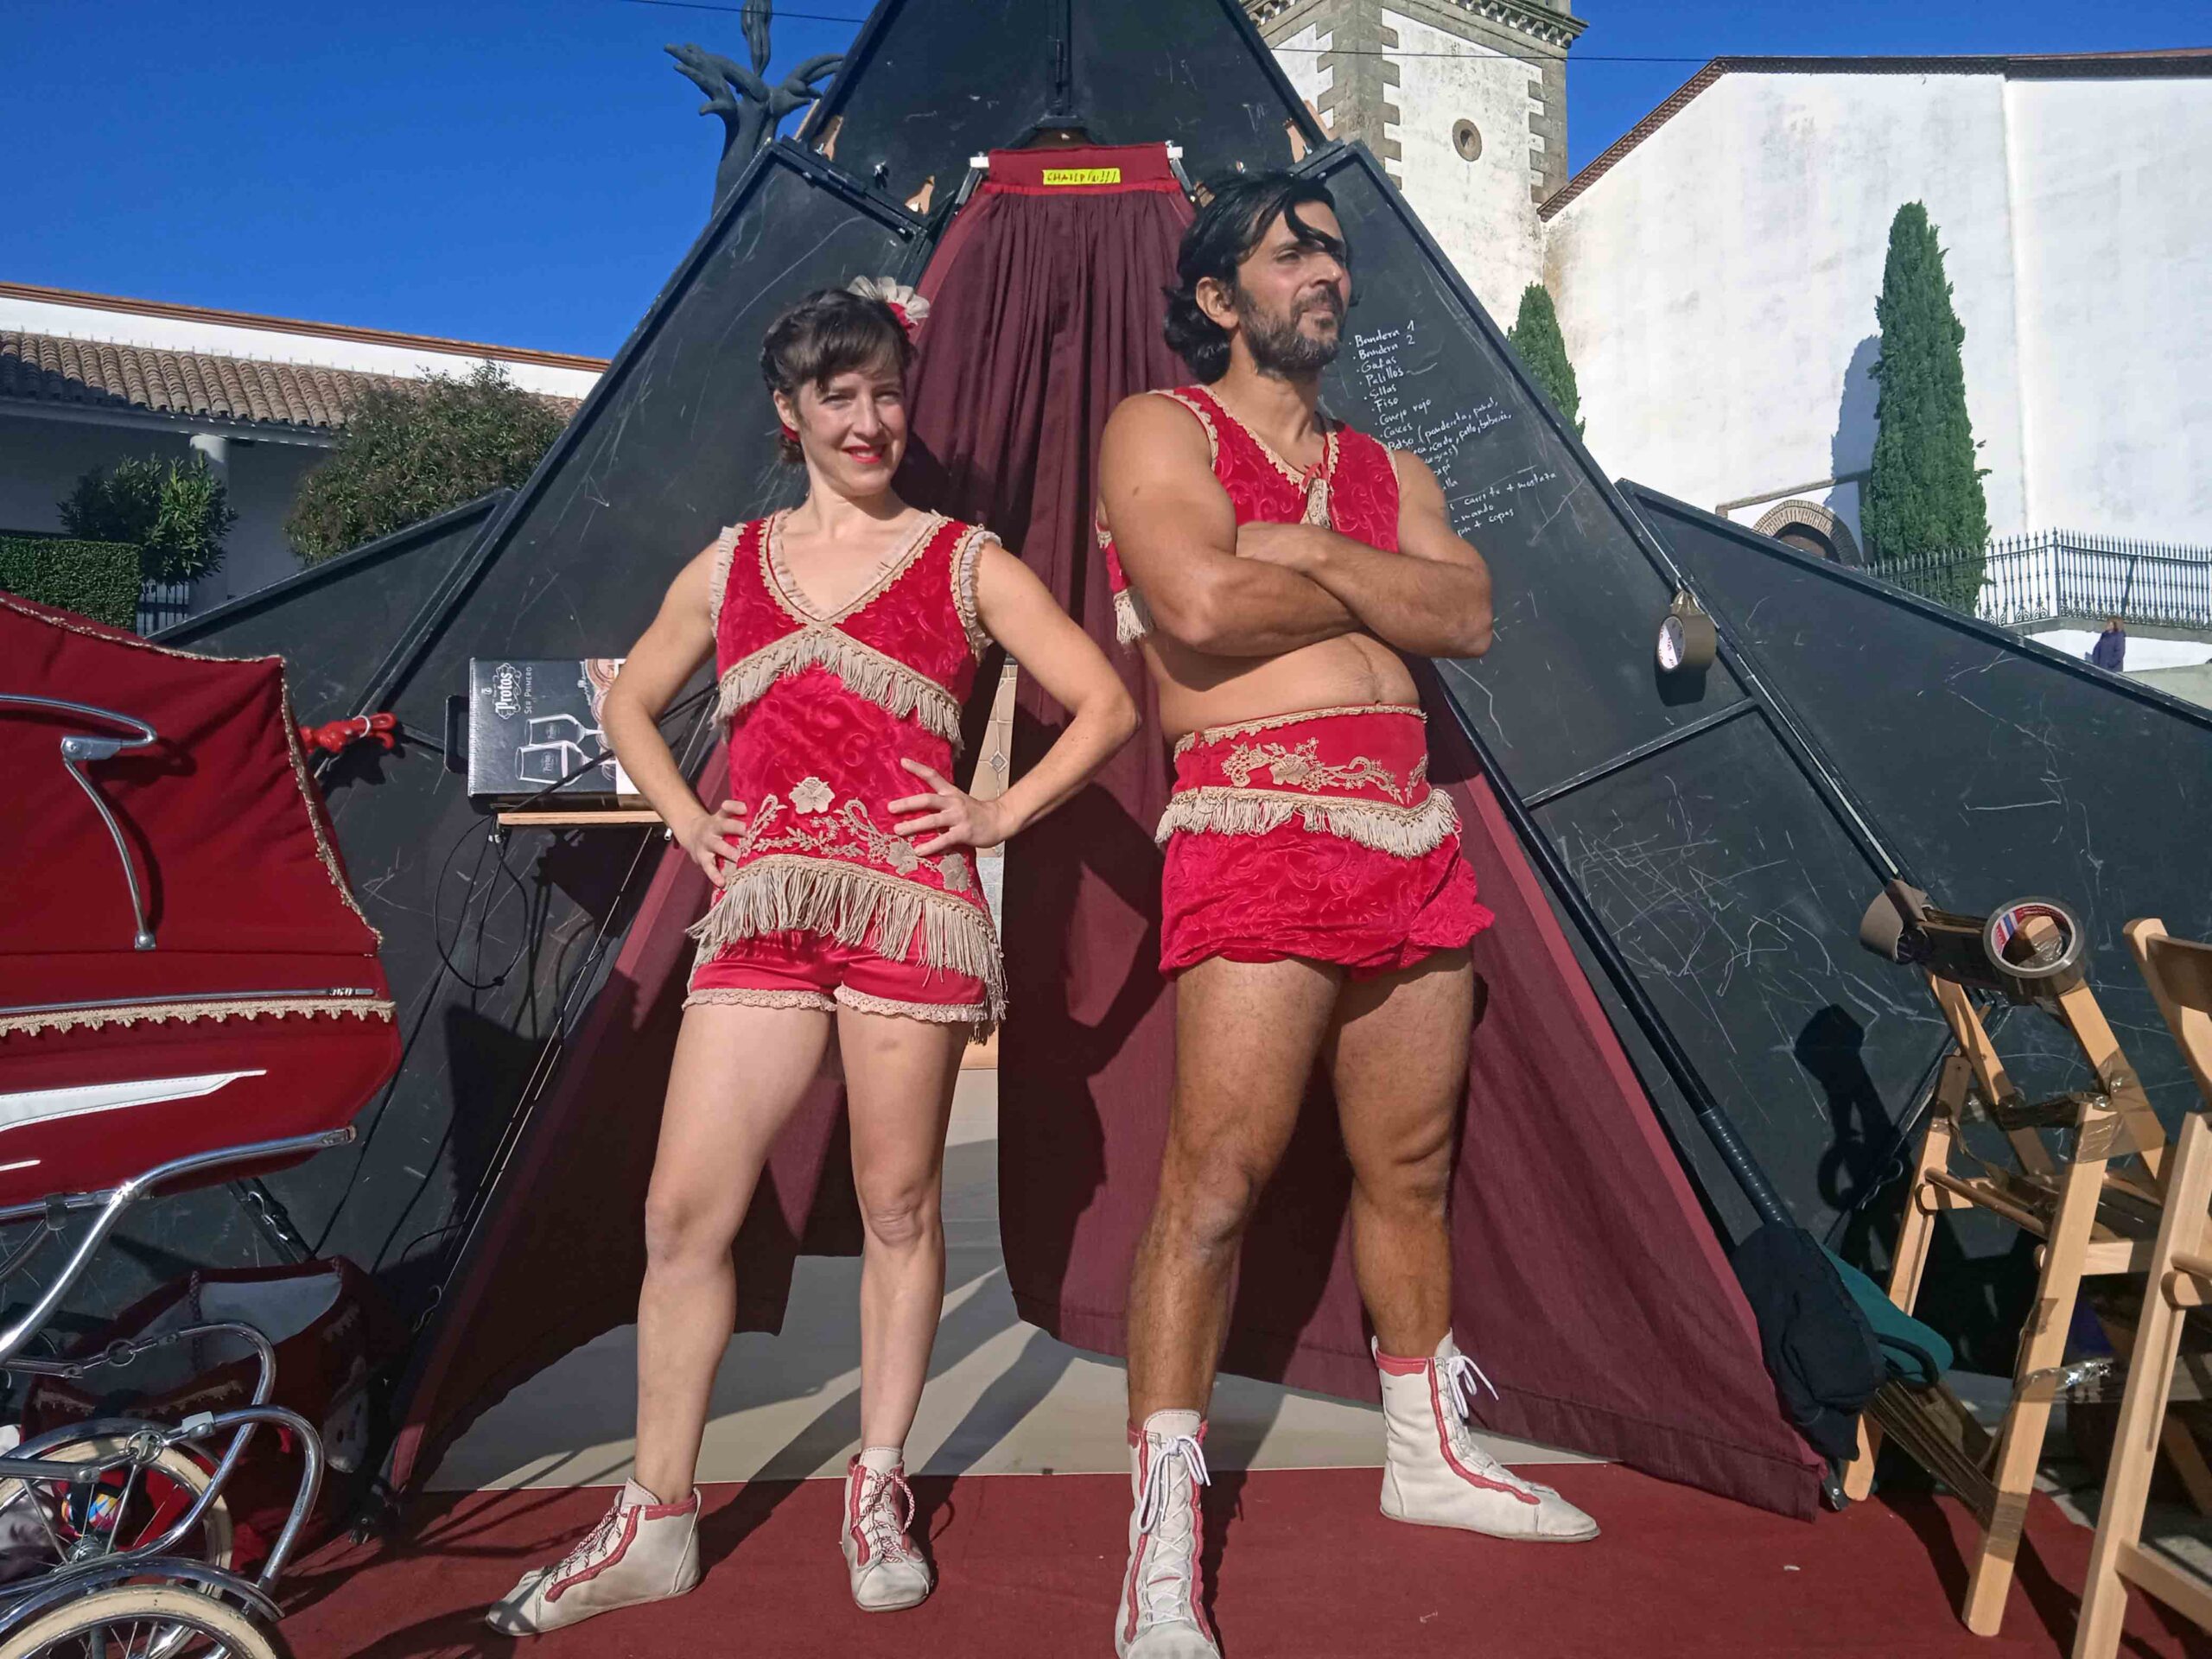 Circo, humor y conciliación se dan cita en Fuente Obejuna con “Volantino”, Festival de circo y artes de calle